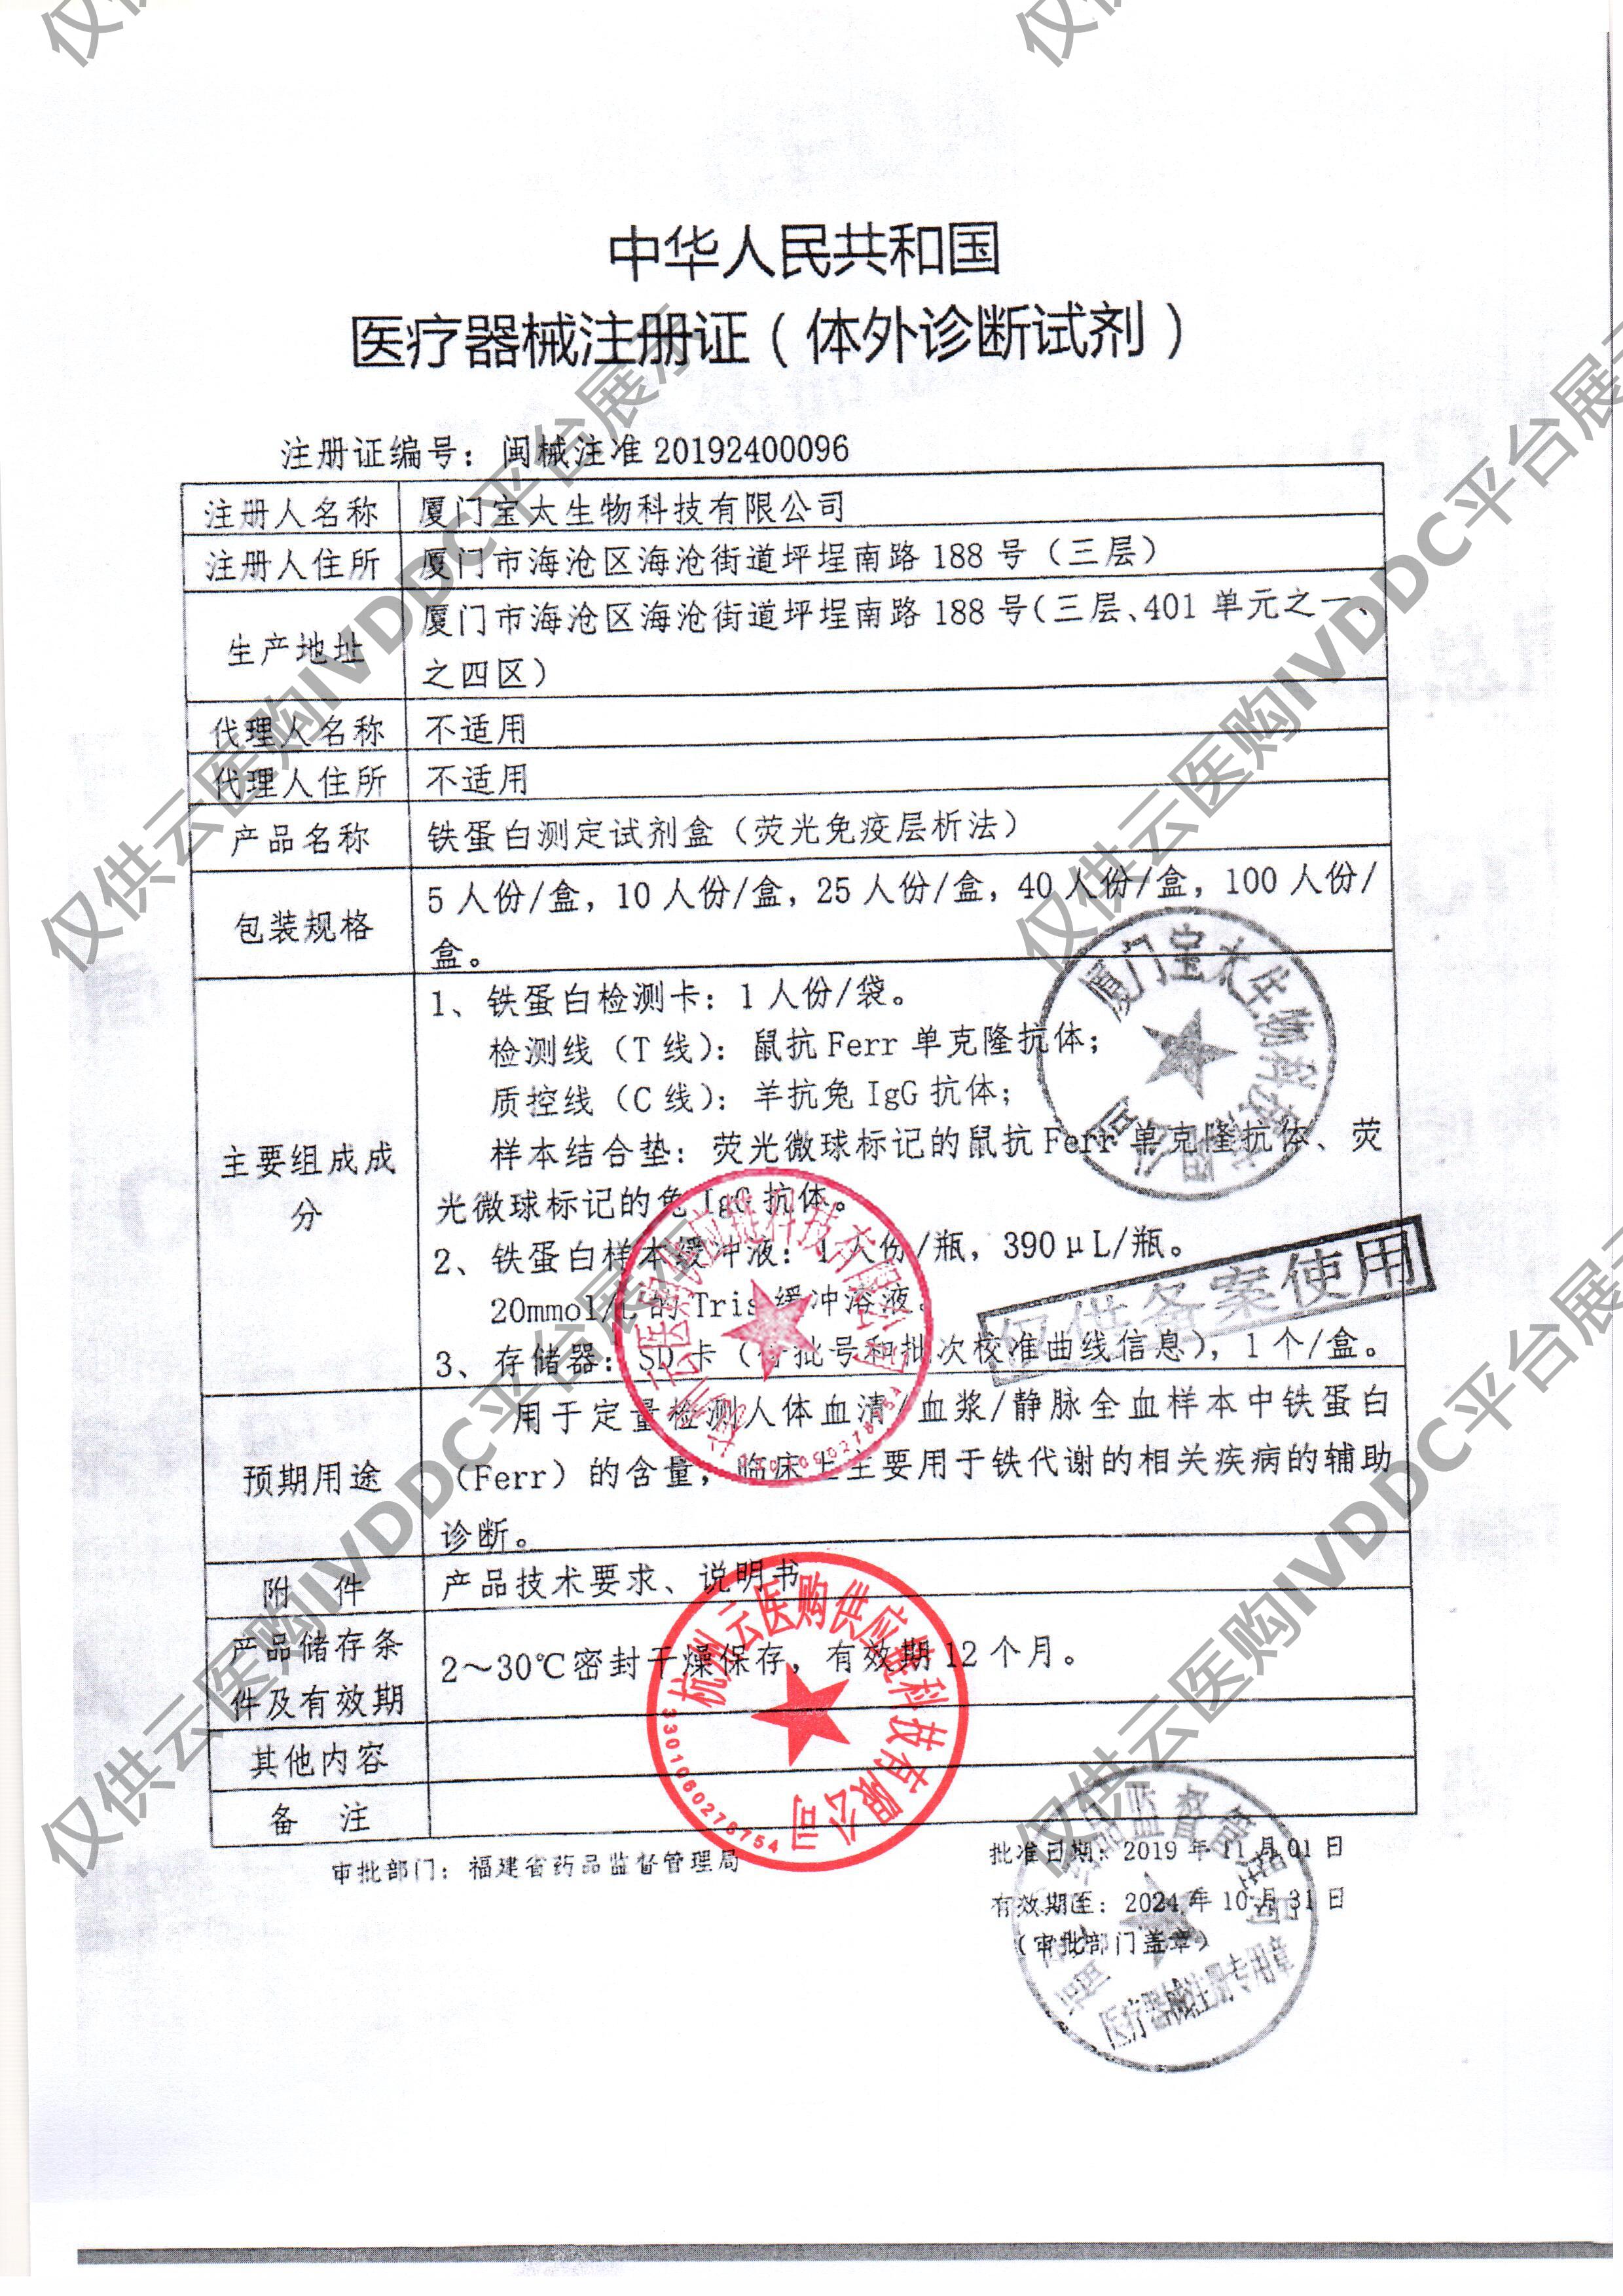 【宝太】铁蛋白测定试剂盒(荧光免疫层析法)注册证